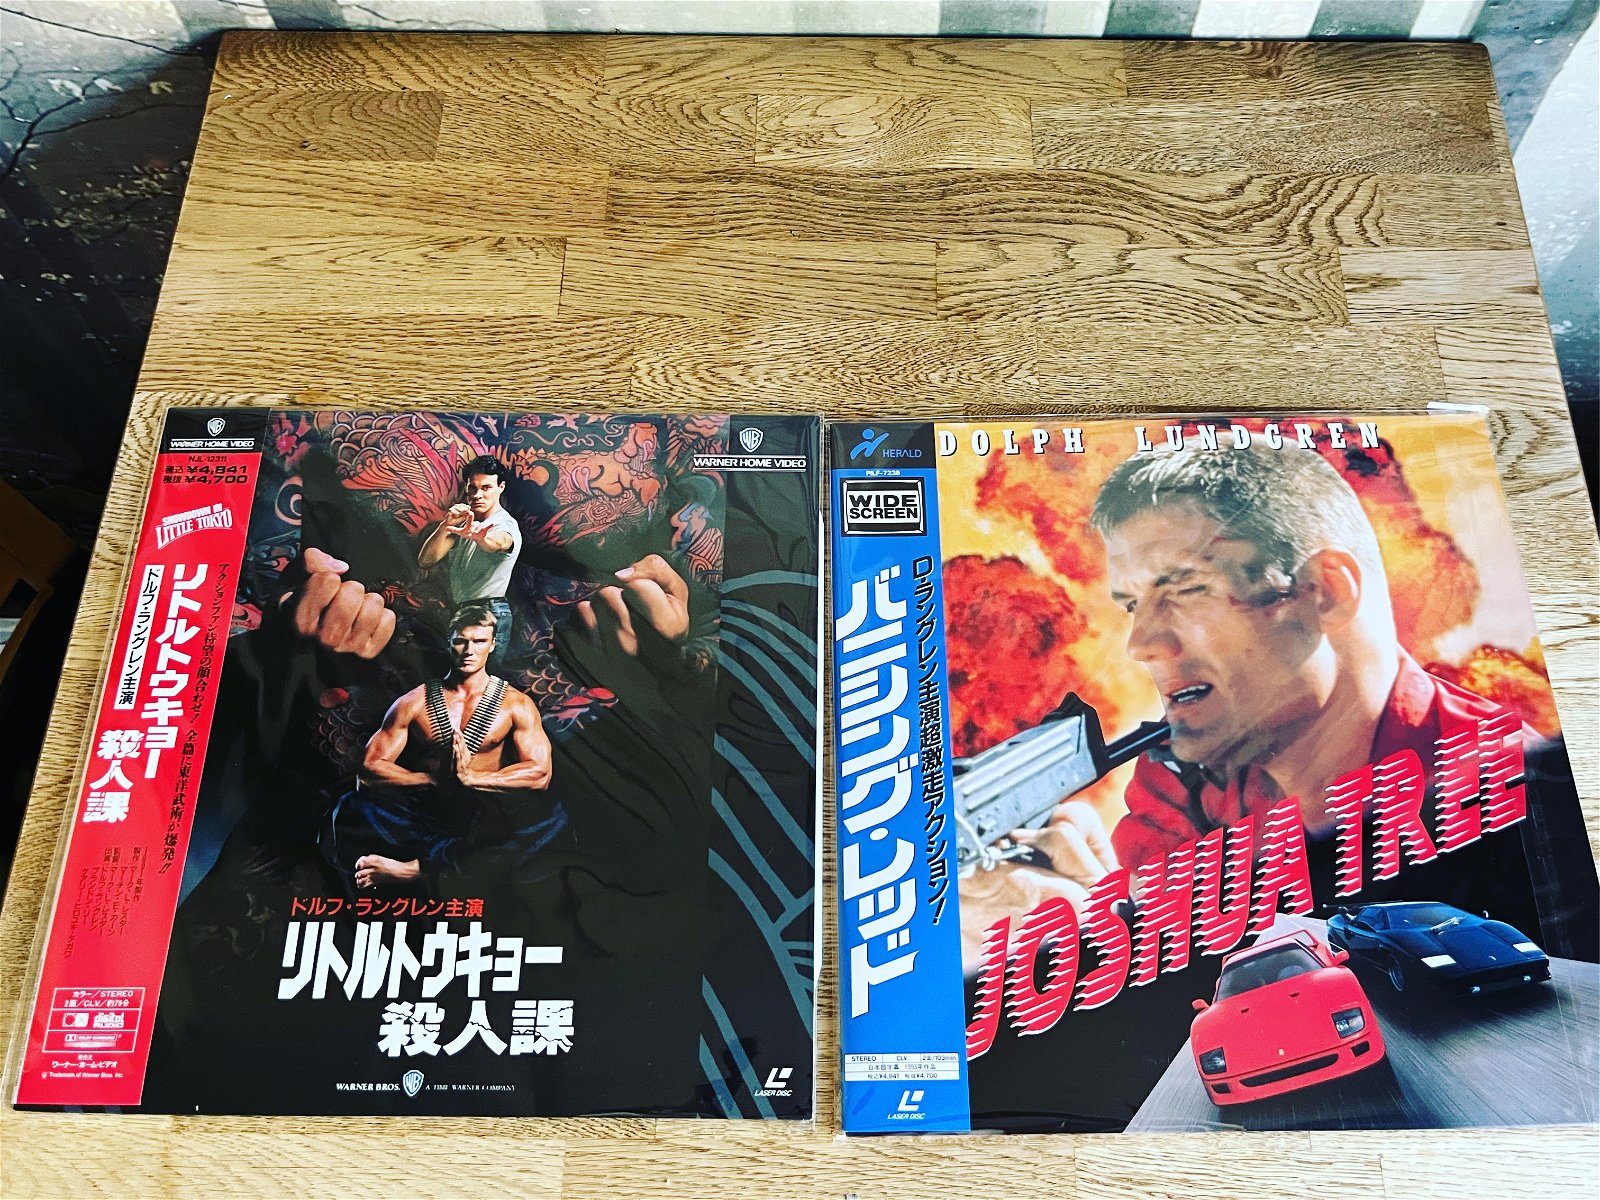 Japanska laserdiscutgåvor av Showdown in Little Tokyo (foto: Warner Bros.) och Joshua Tree (foto: 20th Century Fox). Foto: Andreas Ziegler.